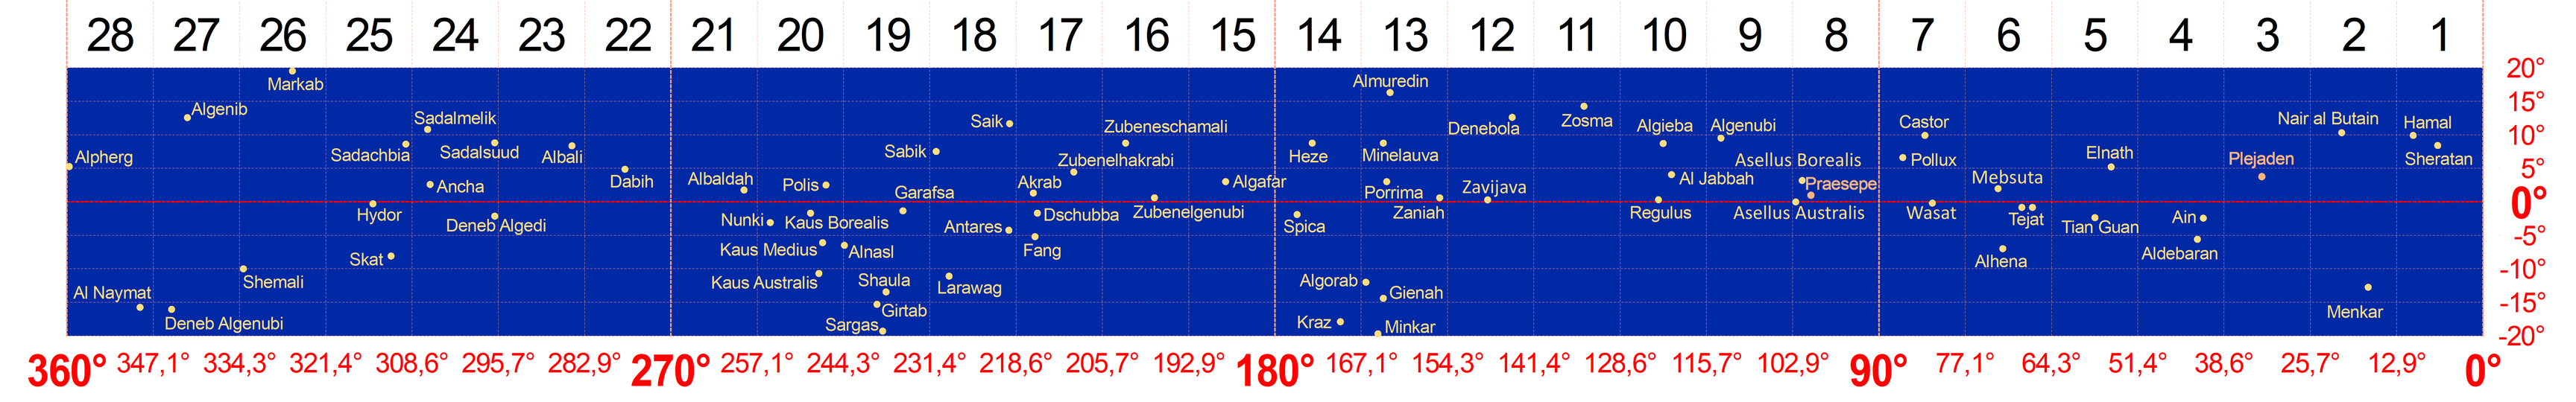 Die in die Ebene projizierten 28 Mondhäuser (von rechts nach links) mit den wichtigsten Sternen entlang der Ekliptik (rote gestrichelte Linie, ekliptikale Länge von 0 Bogengrad bis 360 Bogengrad zur Epoche J0000.0 in horizontaler Richtung, senkrecht dazu die ekliptikale Breite). Die beiden seitlichen Ränder der Abbildung gehen im Kreisbogen der Ekliptik nahtlos ineinander über.